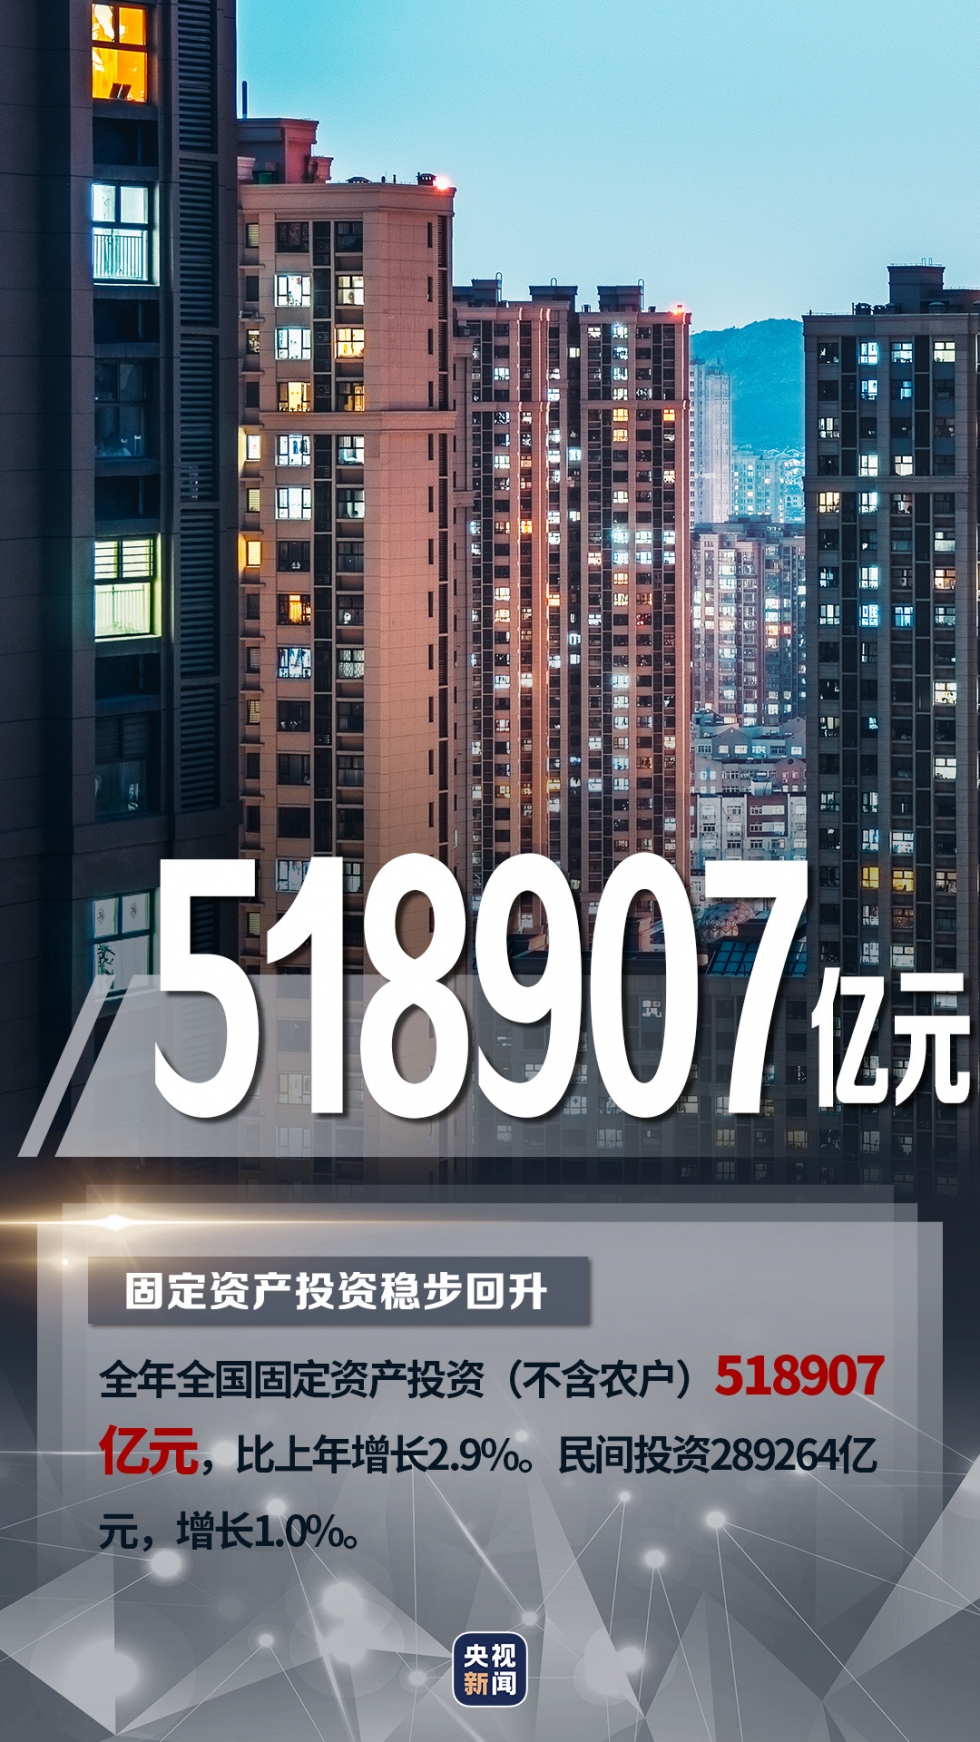 一组海报“数”览中国经济“成绩单”